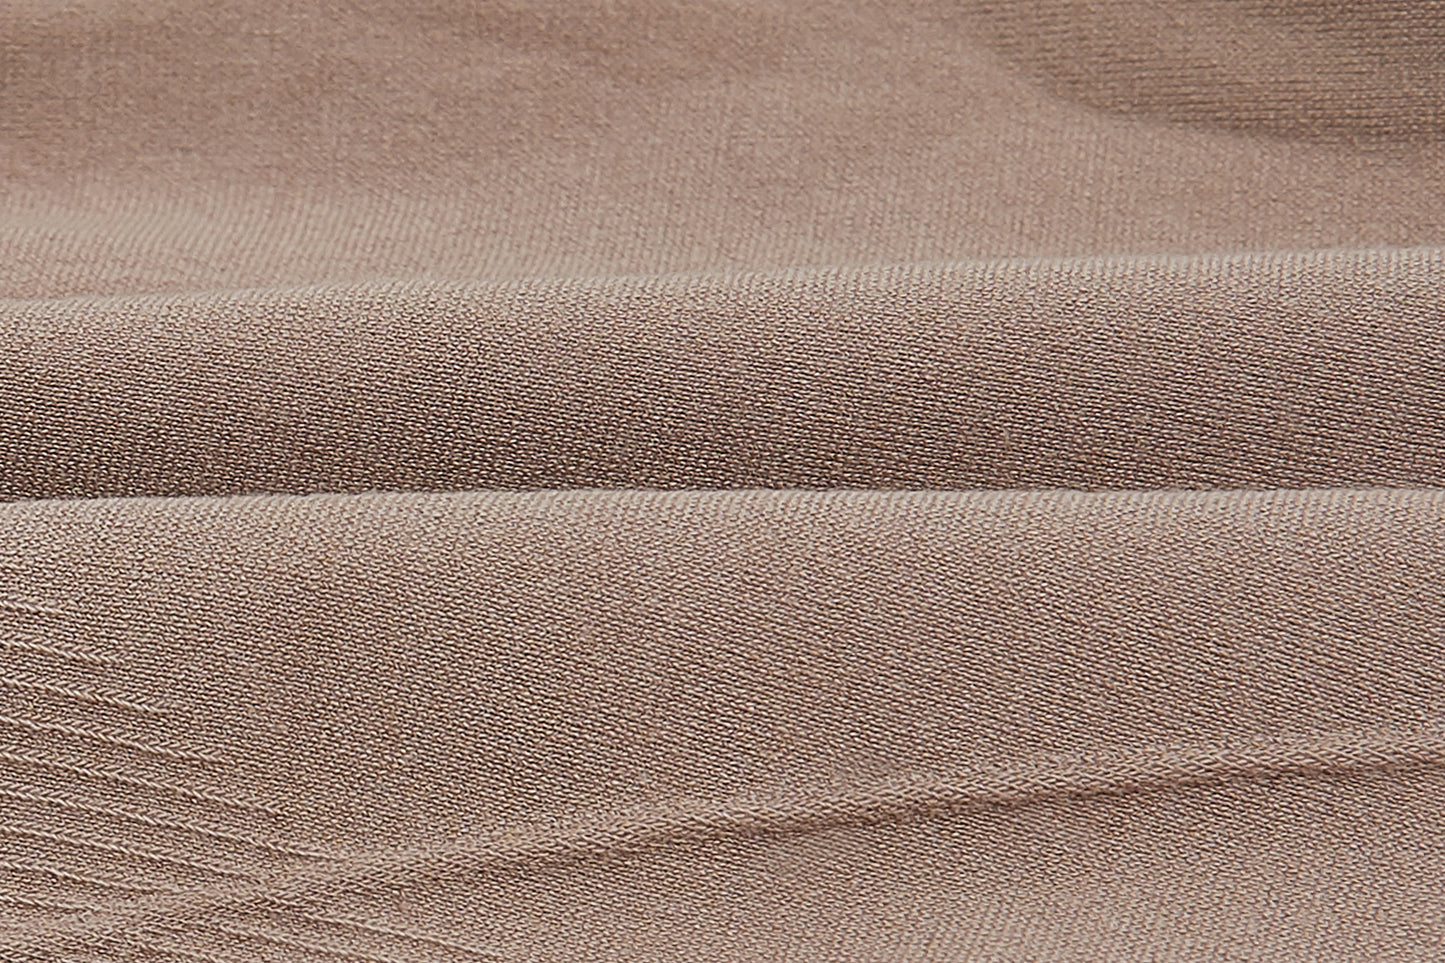 close up of tan fabric